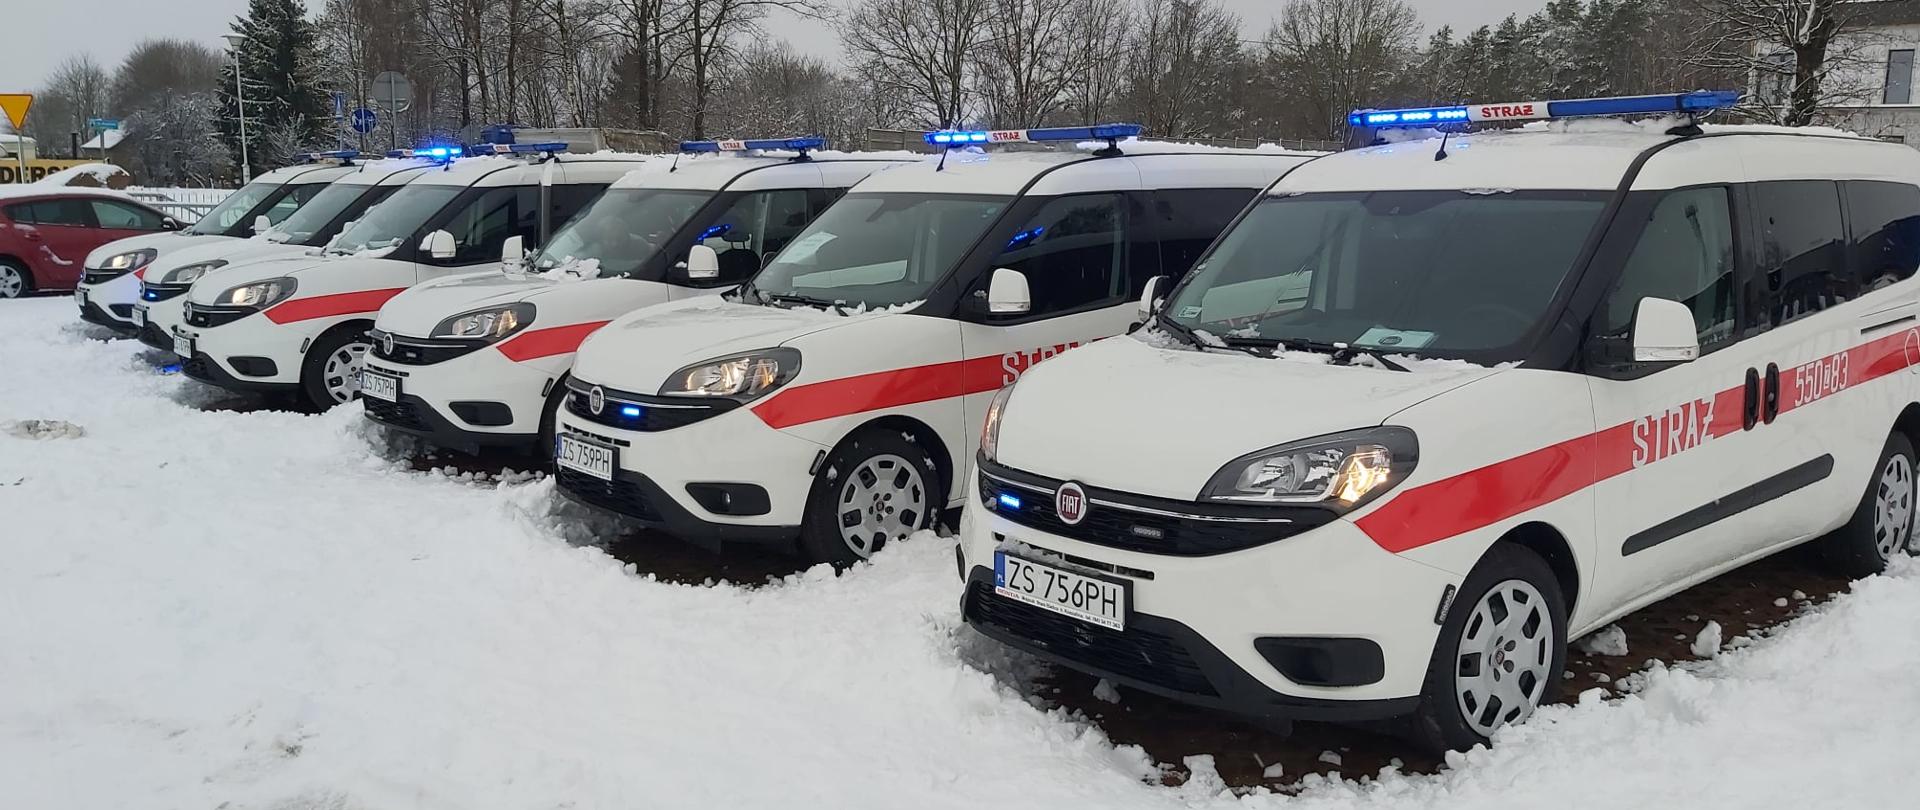 6 samochodów Fiat Doblo Maxi na sygnałach świetlnych oraz światłach mijania. Ustawione w rzędzie na parkingu. W tle widoczne zaśnieżone drzewa, przy samochodach leży świeży śnieg.